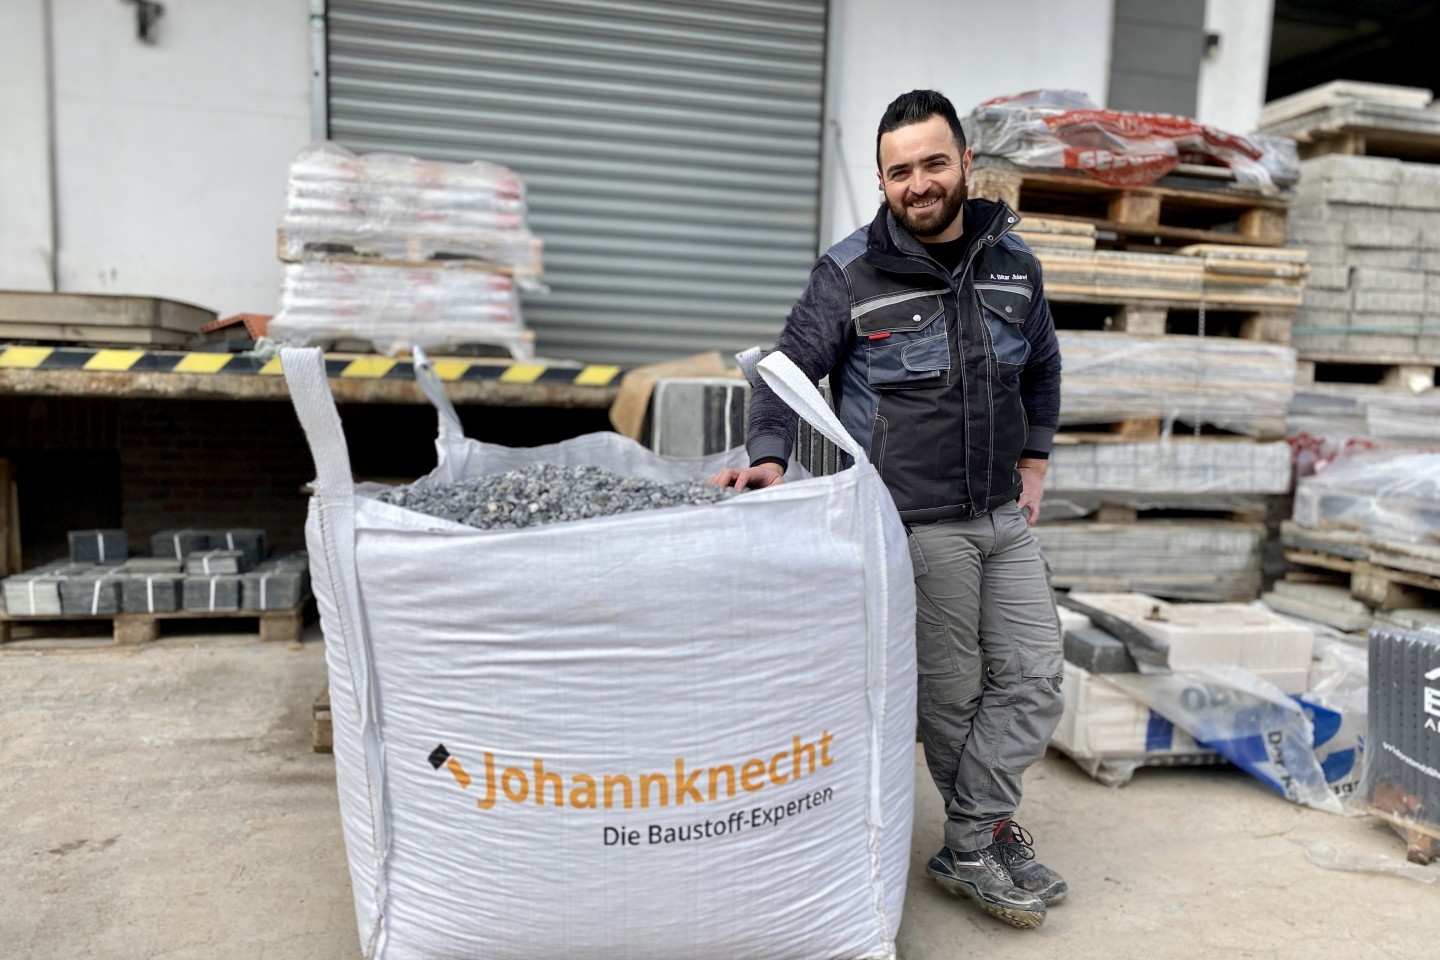 Abbi arbeitet bei der Johannknecht GmbH